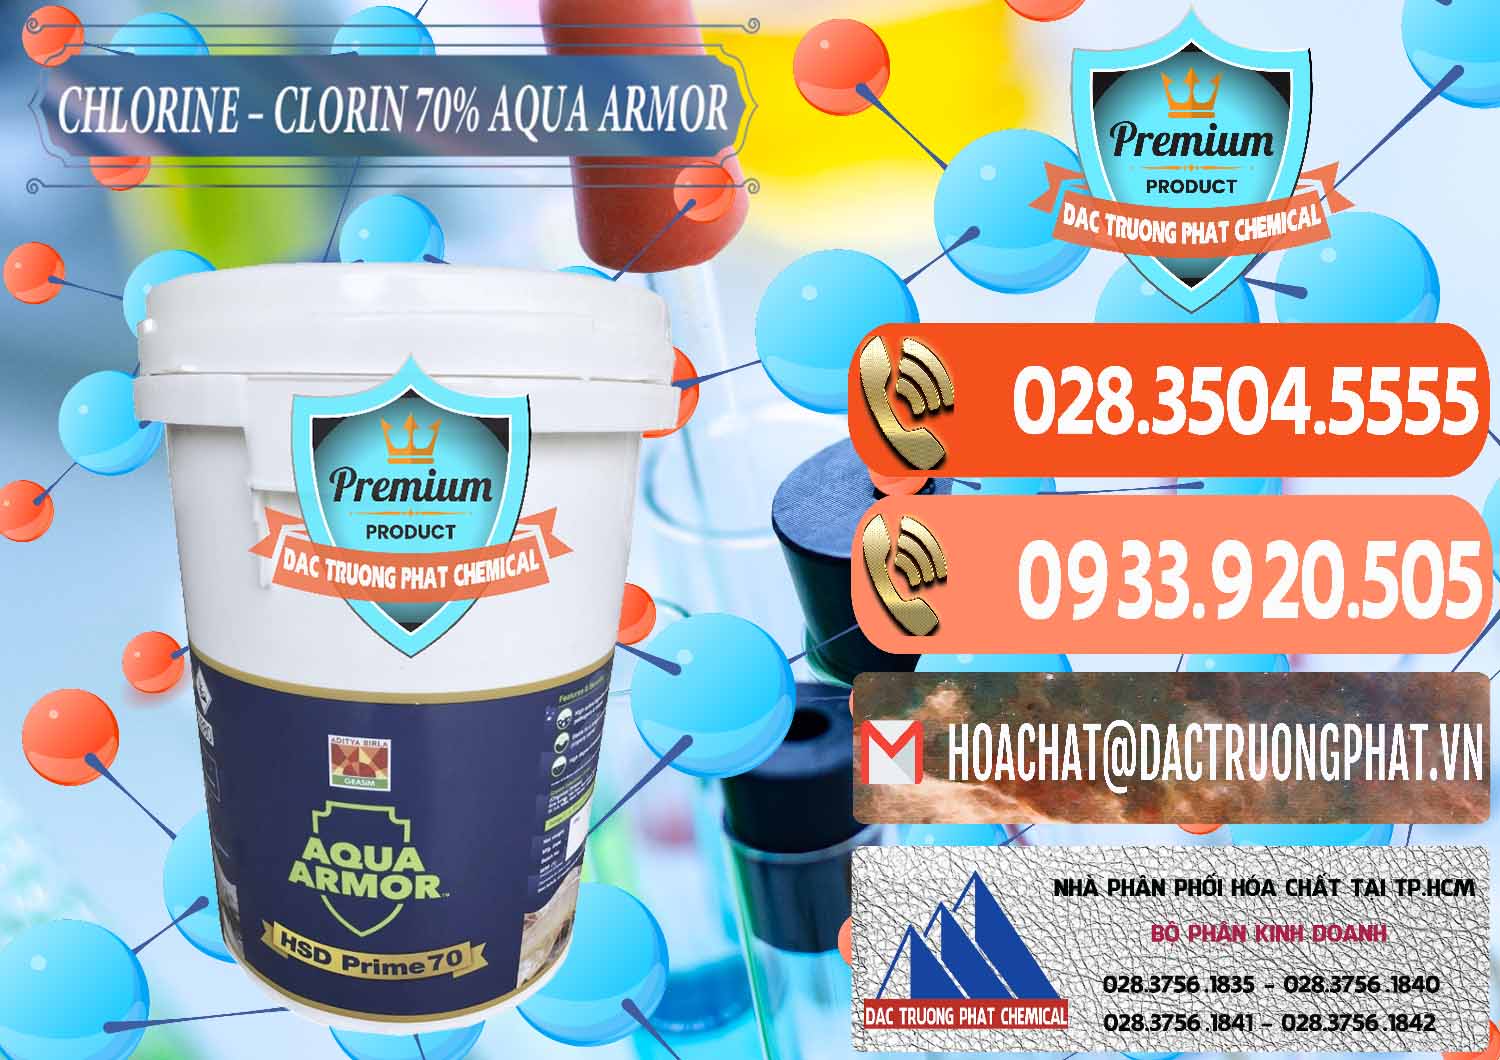 Đơn vị chuyên cung cấp và bán Chlorine – Clorin 70% Aqua Armor Aditya Birla Grasim Ấn Độ India - 0241 - Nơi bán ( cung cấp ) hóa chất tại TP.HCM - hoachatmientay.com